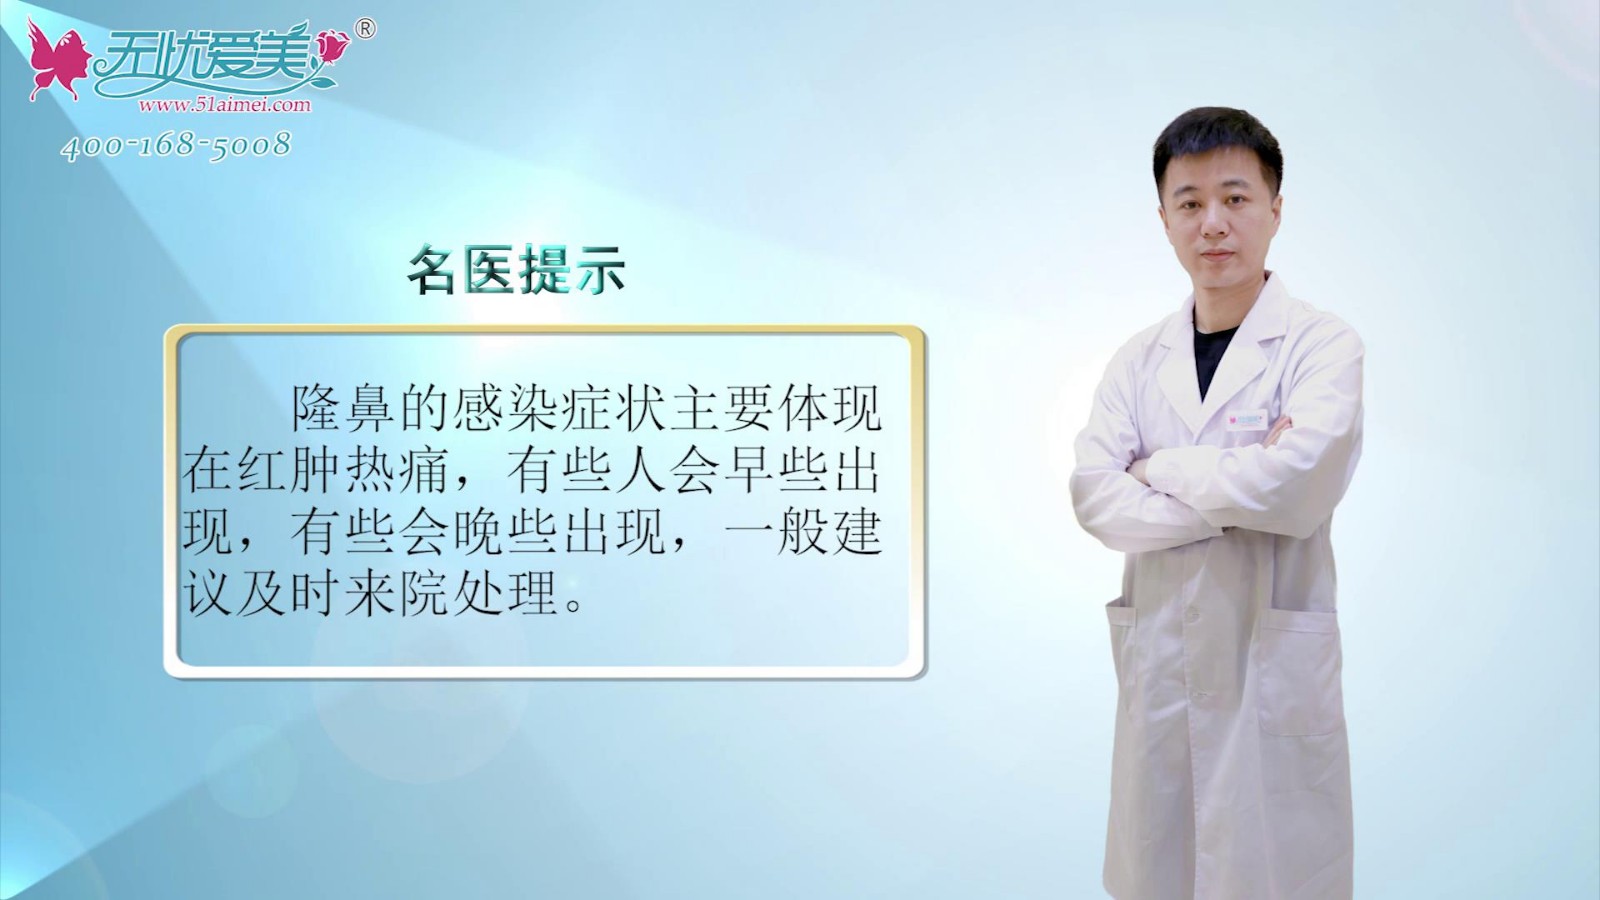 南京鼻祖医生视频分享假体隆鼻感染症状及处理方法